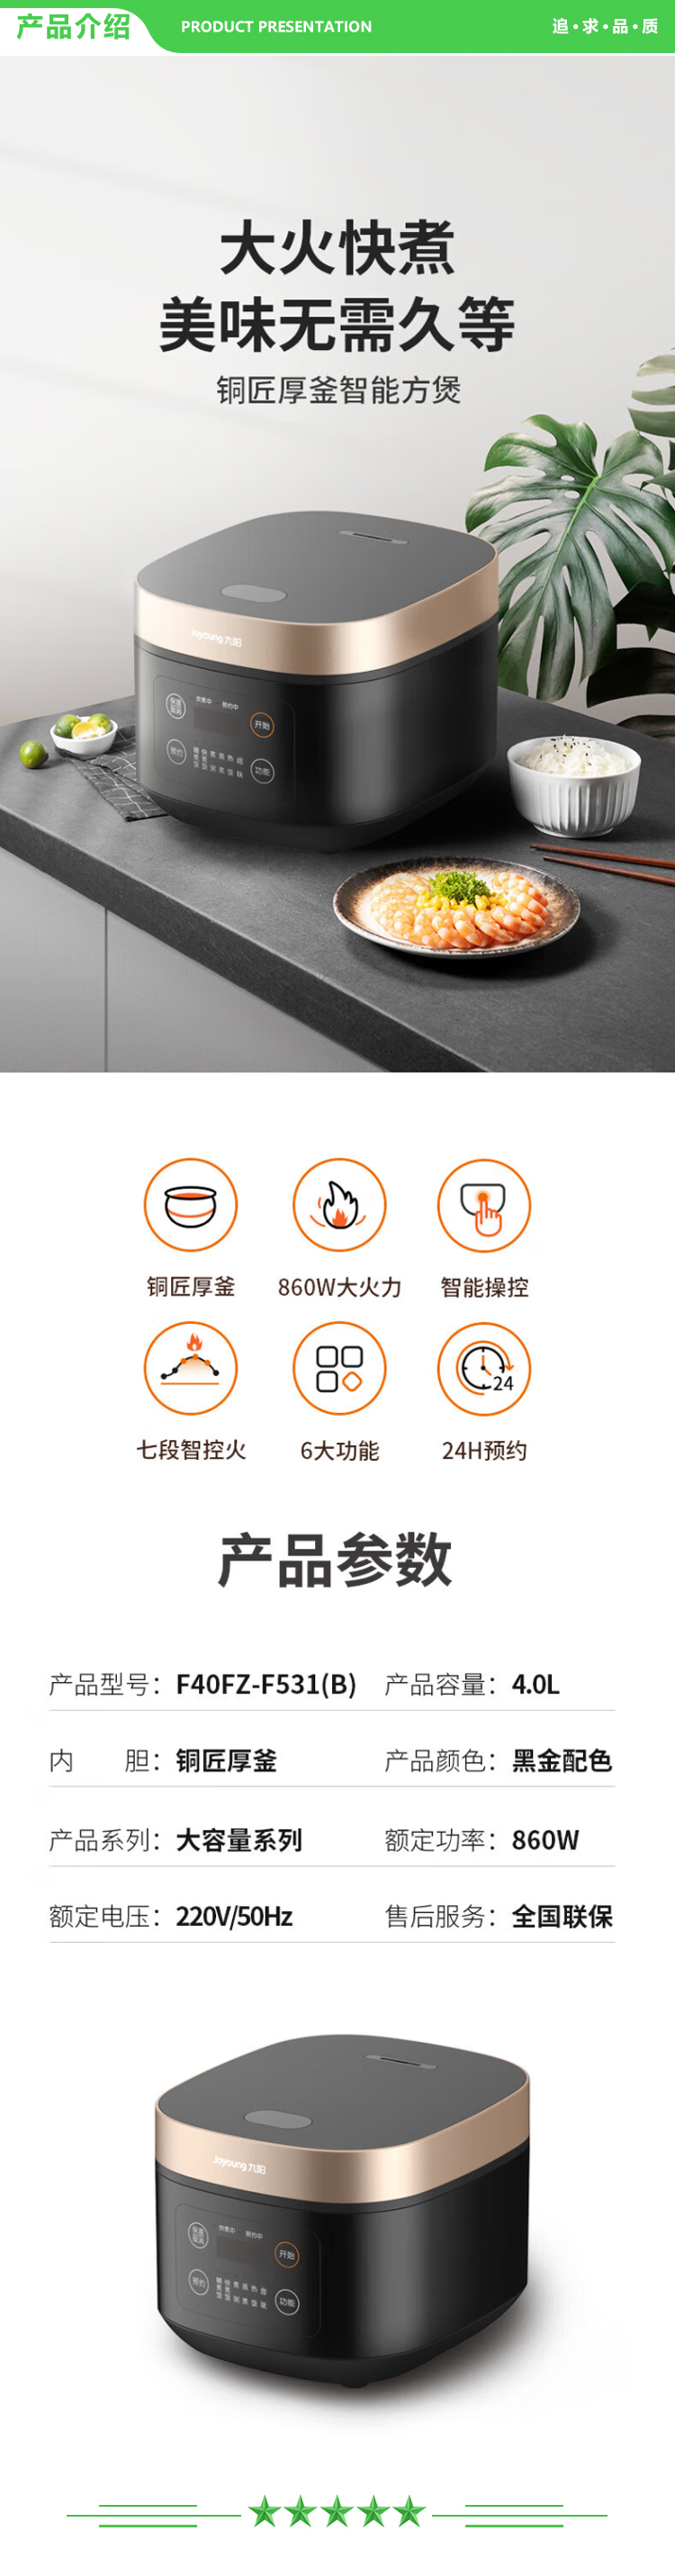 九阳 Joyoung F40FZ-F531 电饭煲多功能家用电饭锅智能预约定时智能菜单 黑金色 2.jpg